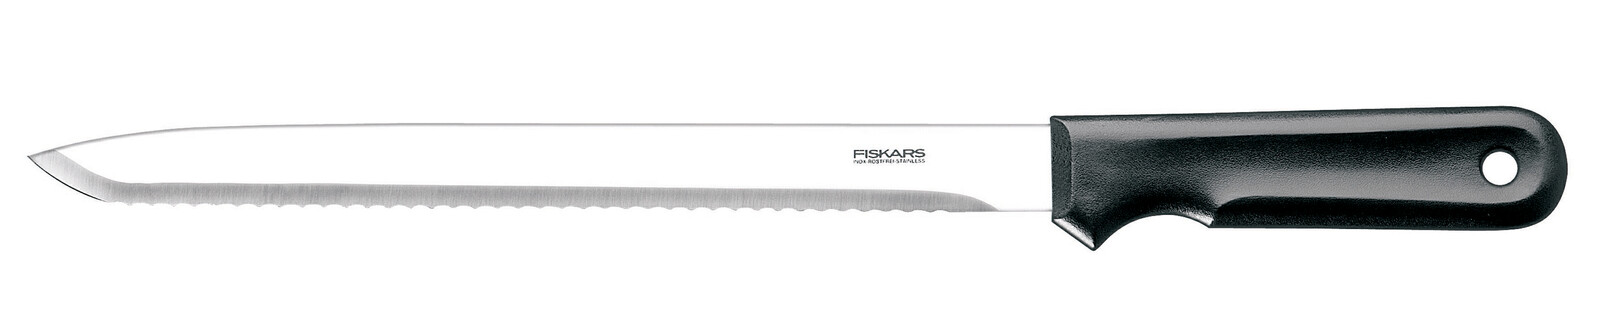 Нож нескладной Fiskars 1001626 в Луцке